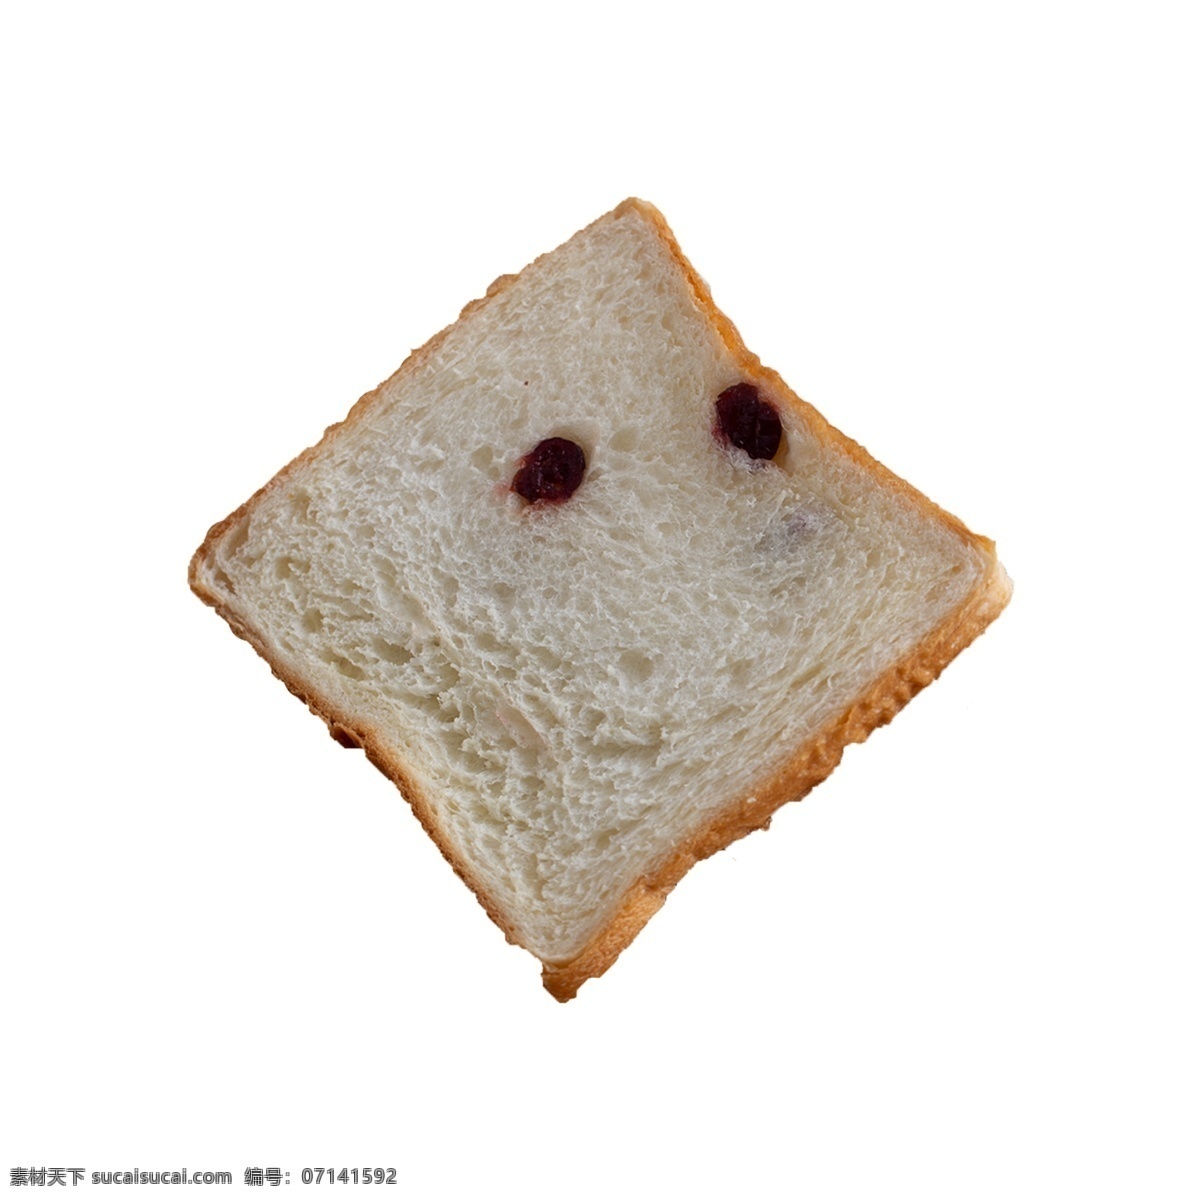 片 切片 面包 实拍 免 抠 一片面包 切片面包 早餐 食物 吃食 营养 蓬松 早饭 烤箱 烘培 摆拍 实物拍摄